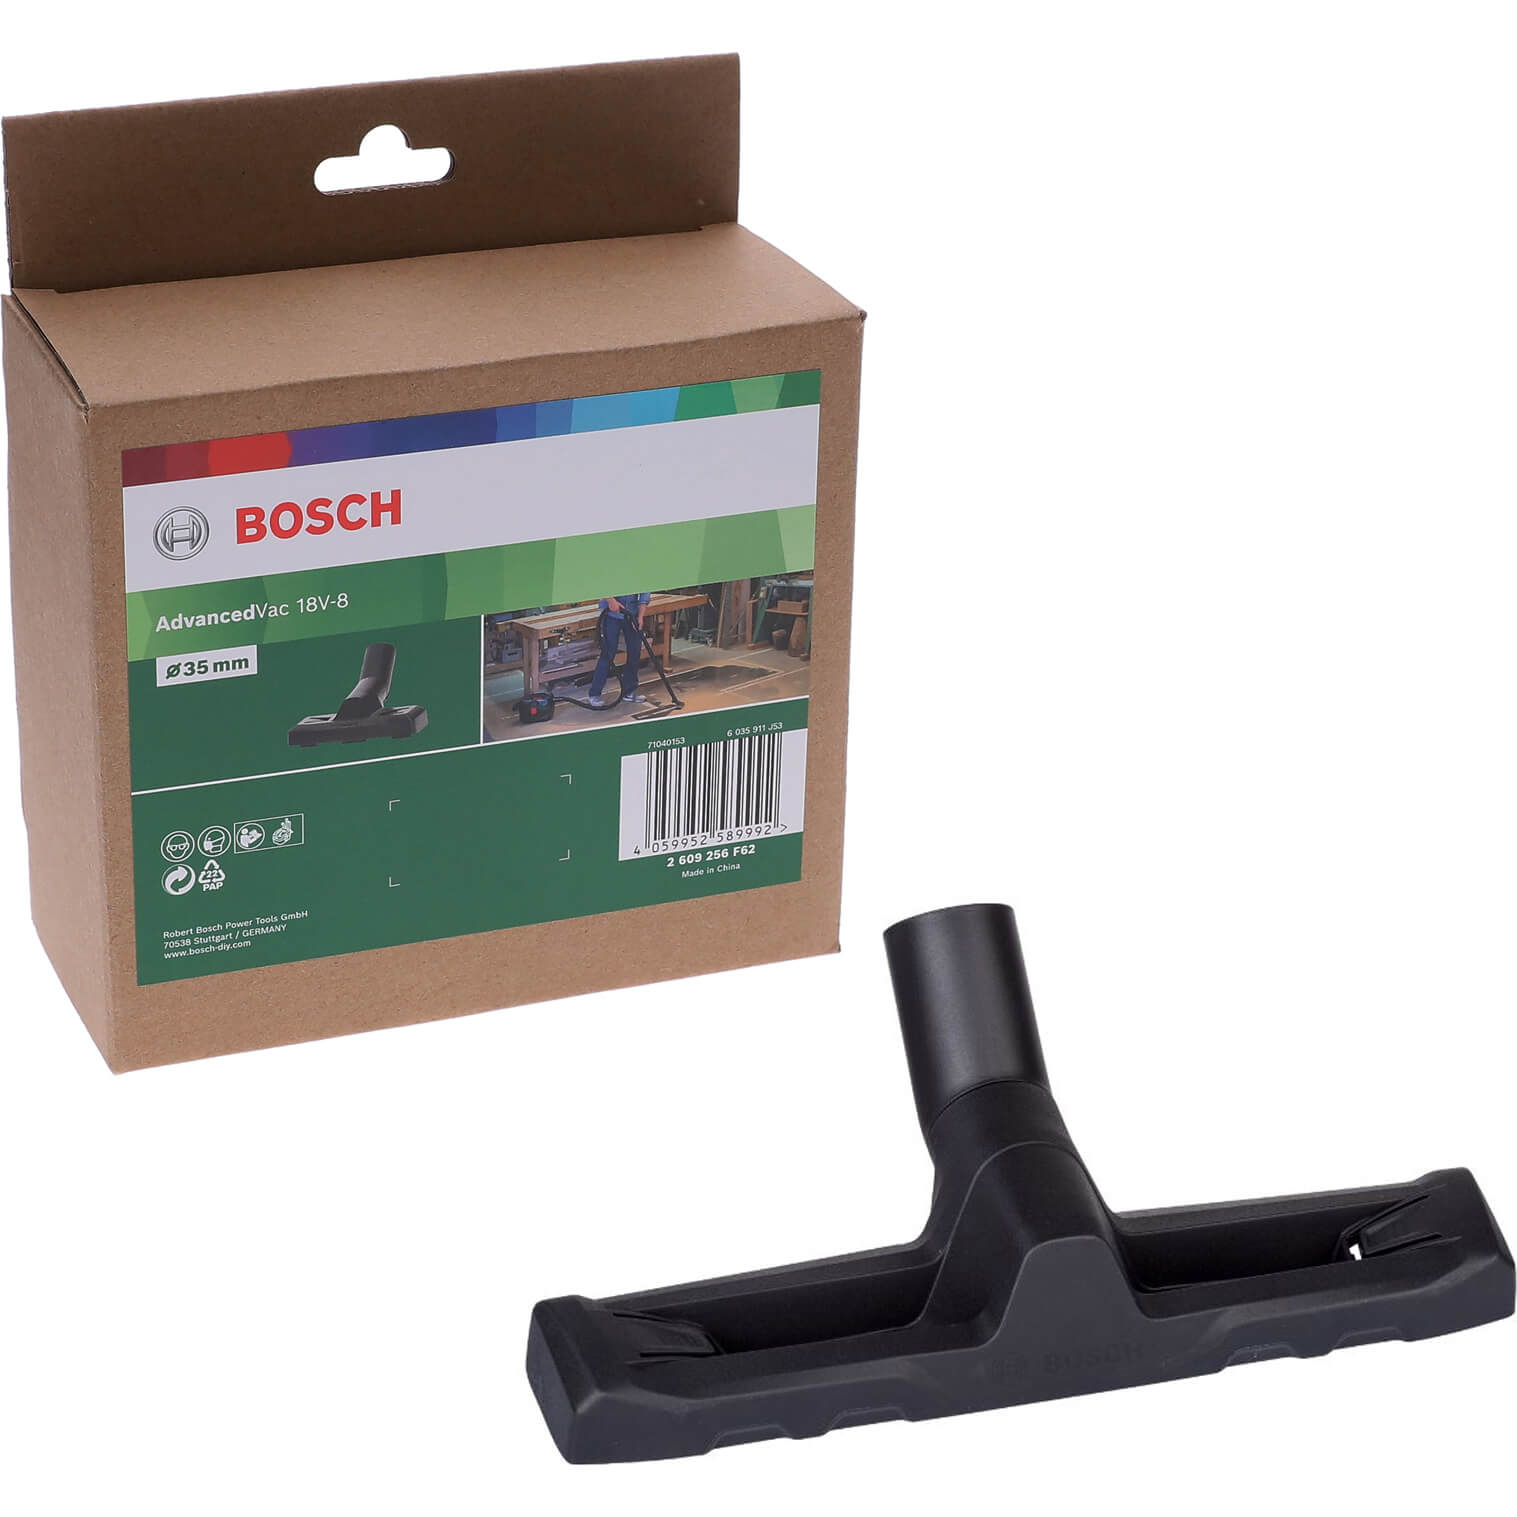 Bosch Floor Tool Nozzle for ADVANCEDVAC 18V-8 Vacuum Cleaner